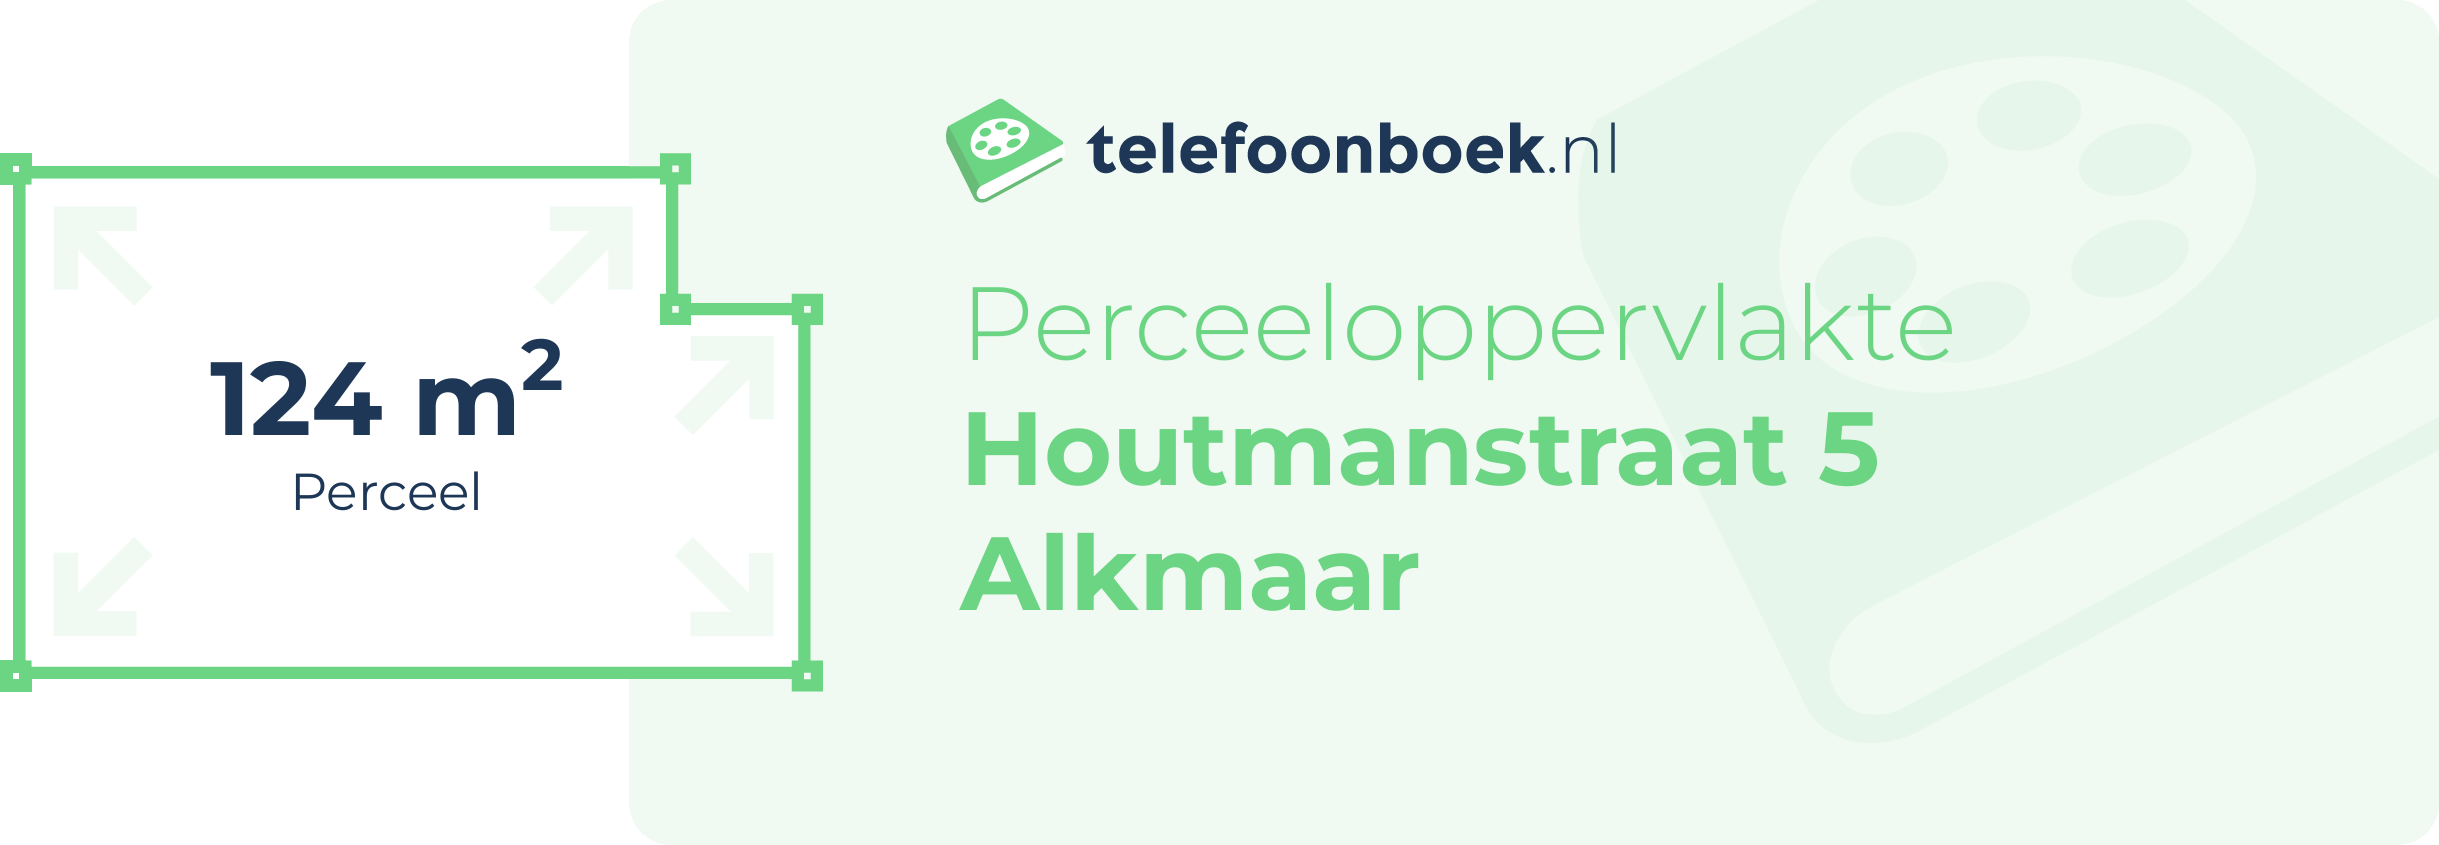 Perceeloppervlakte Houtmanstraat 5 Alkmaar